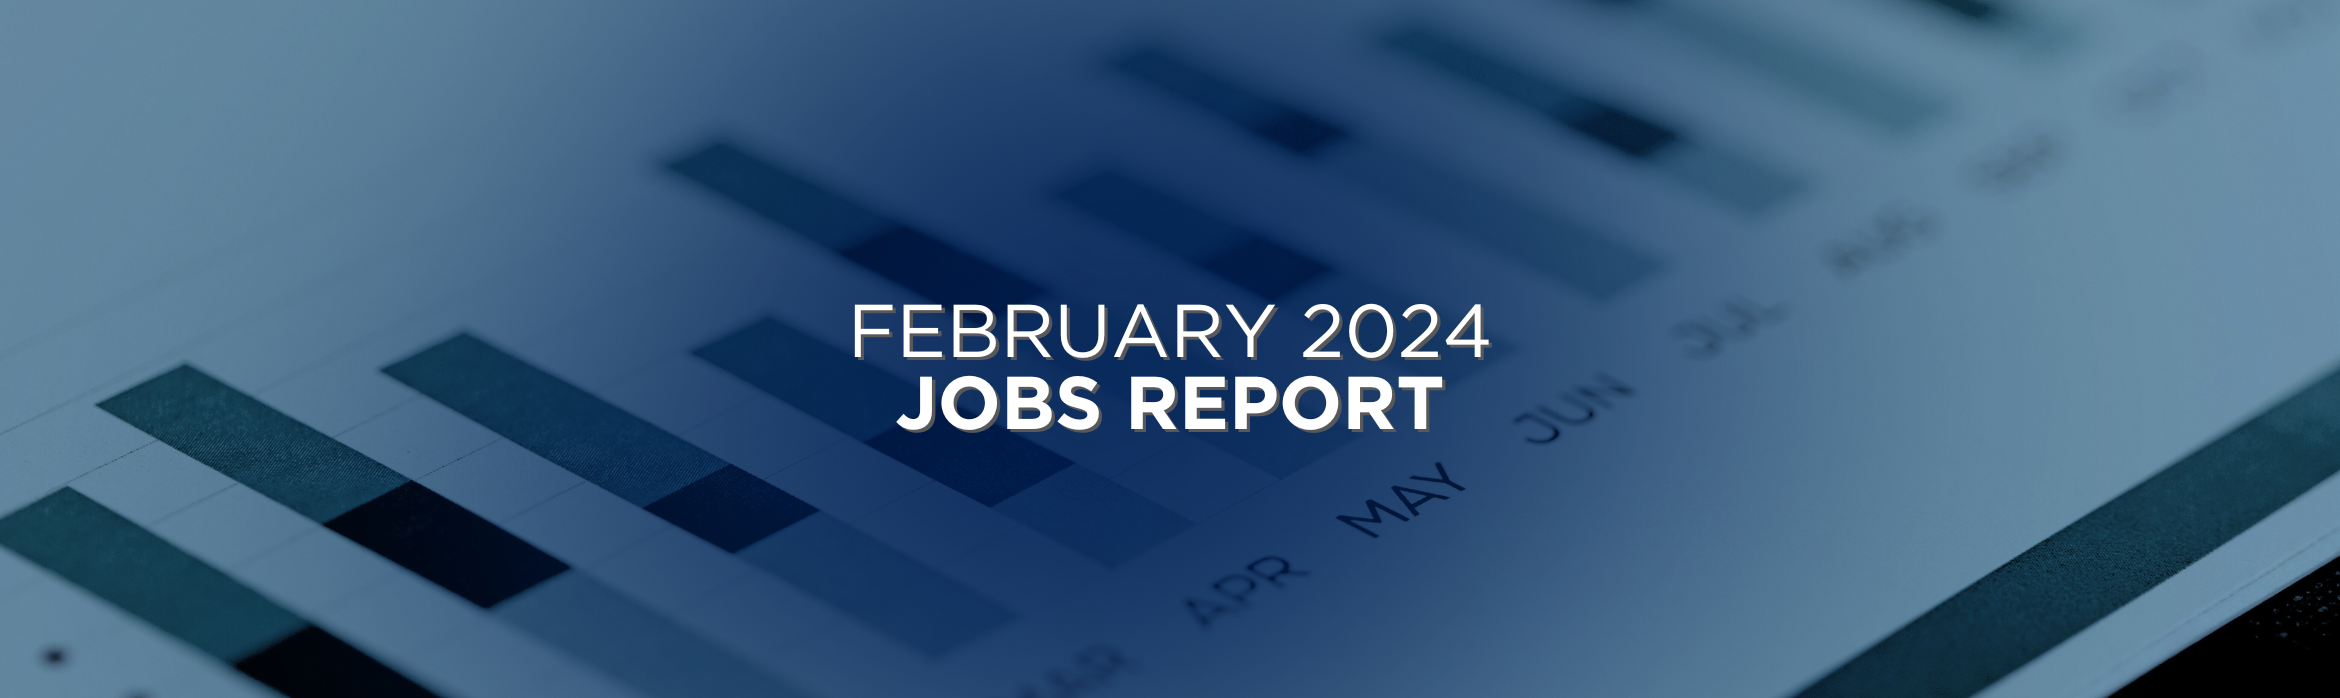 February 2024 Jobs Report Recap